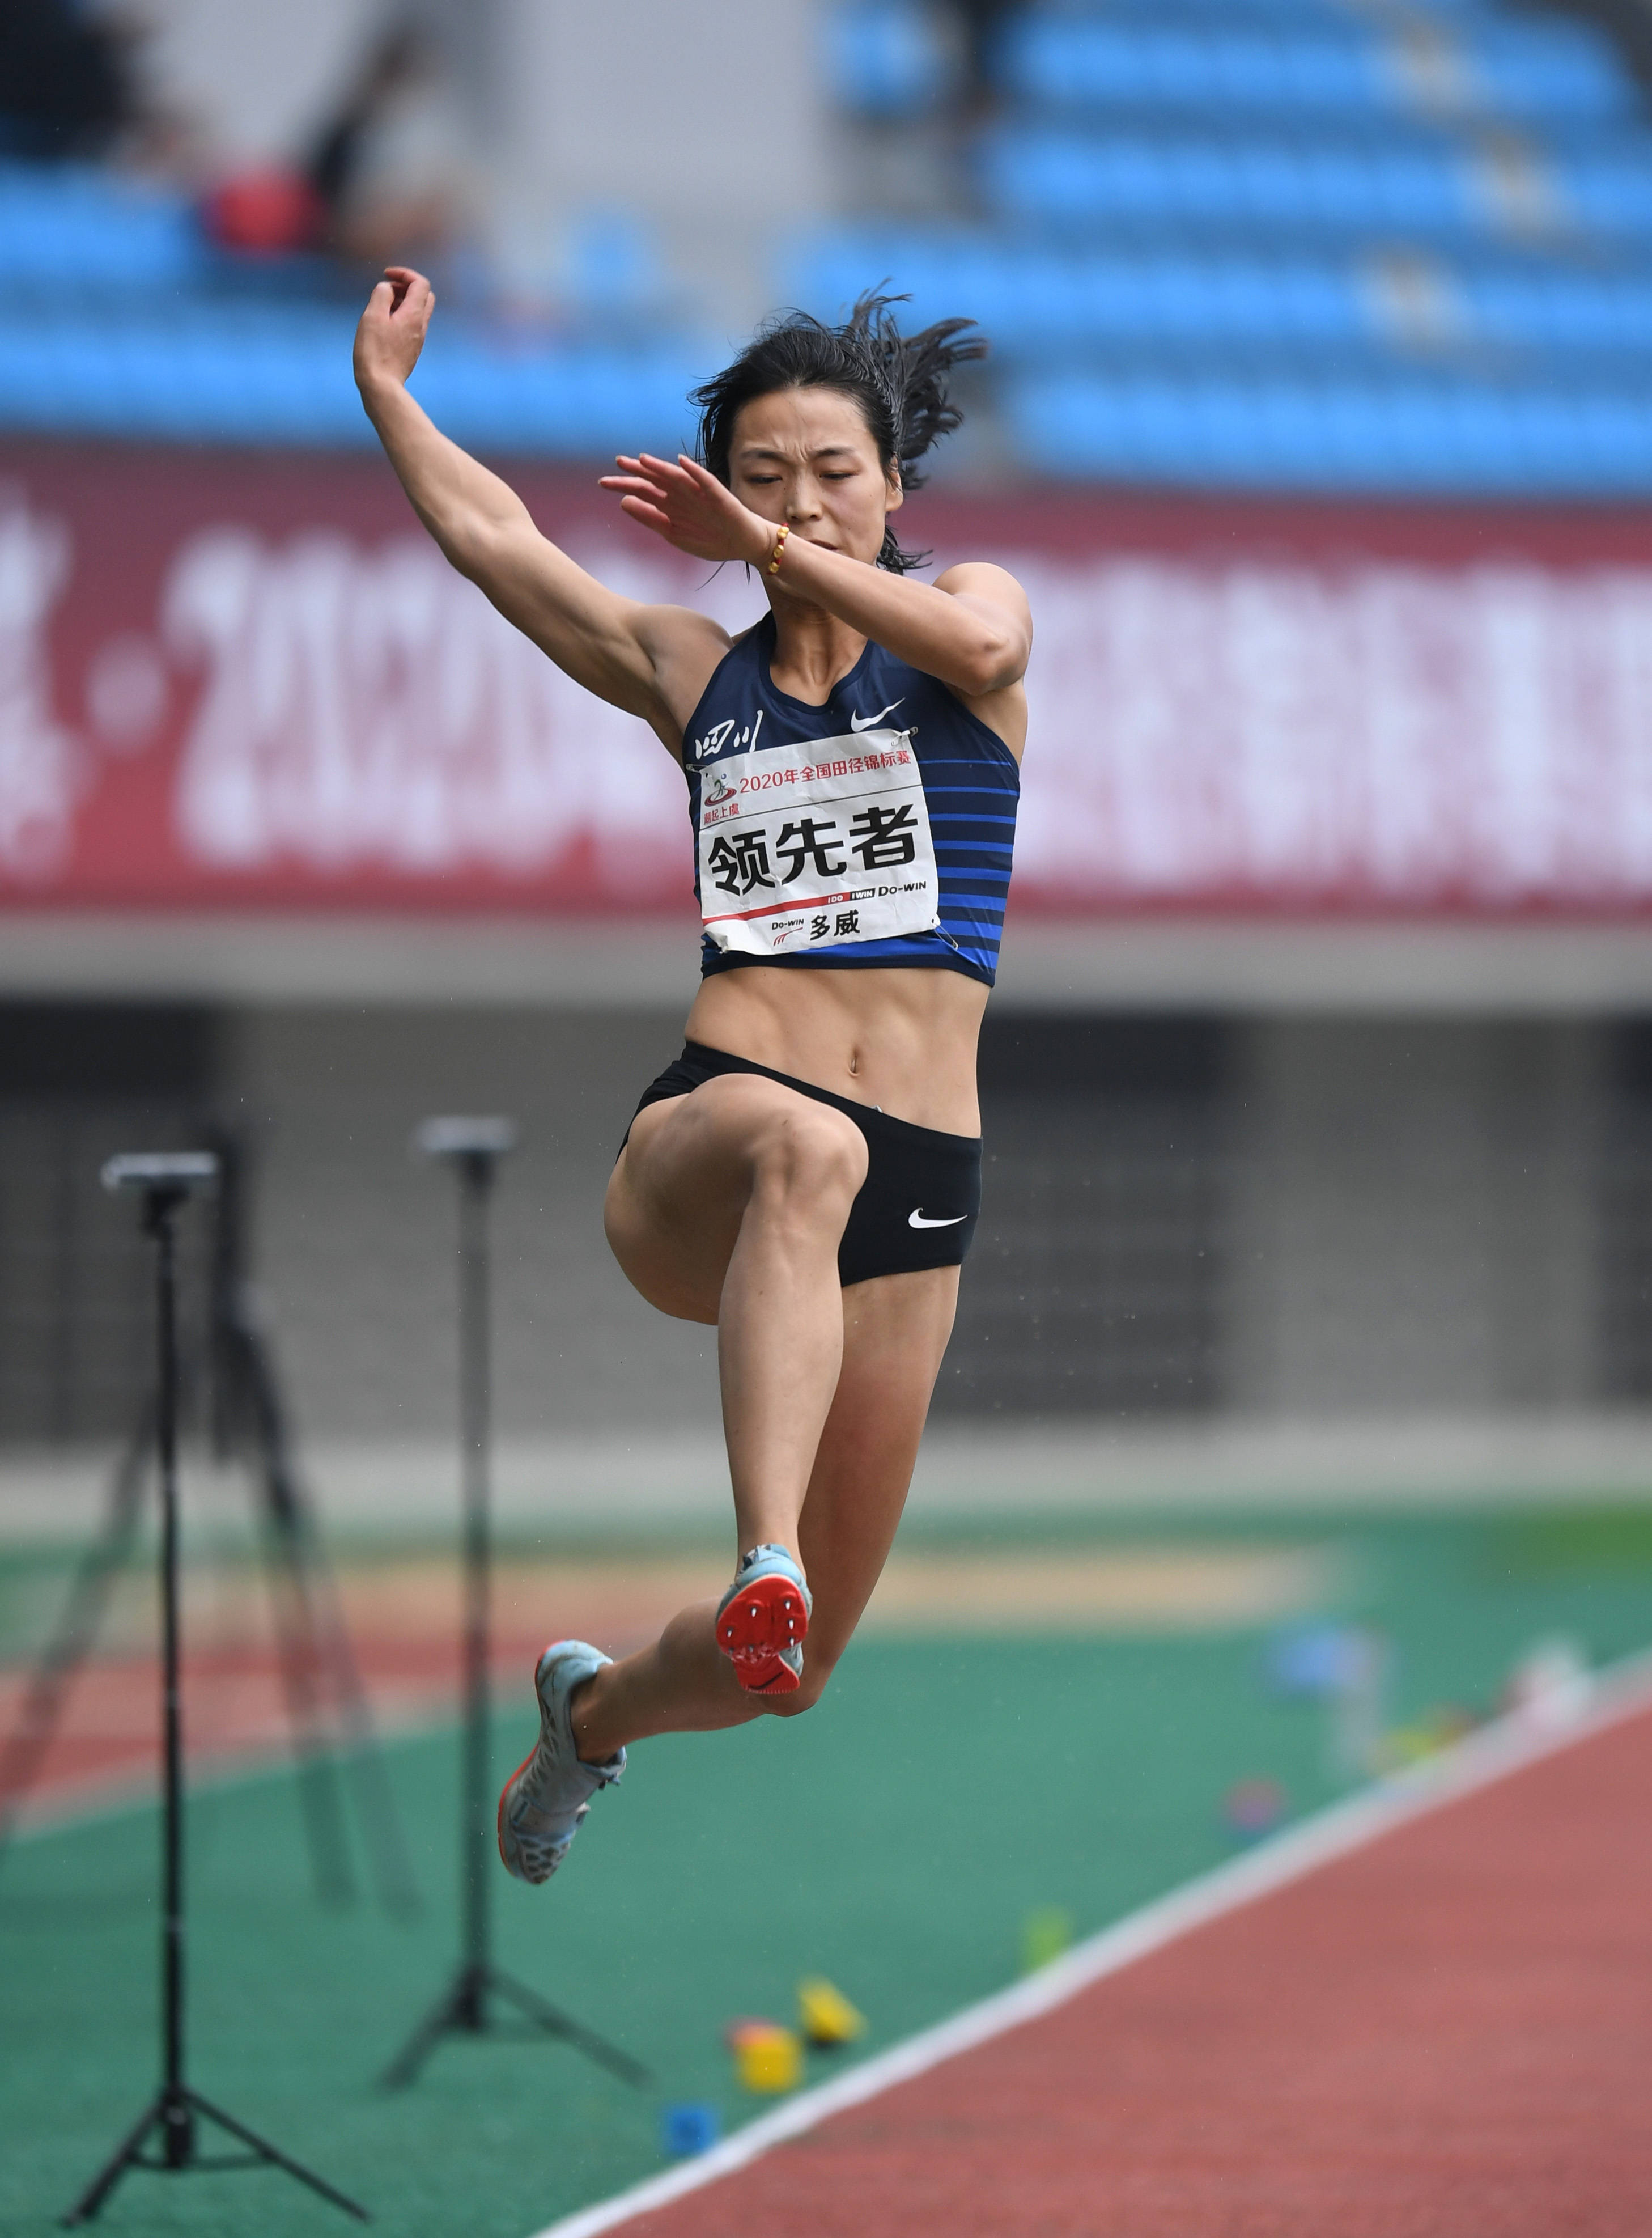 2020年9月16日9月16日,四川队选手任世美在女子七项全能跳远比赛中